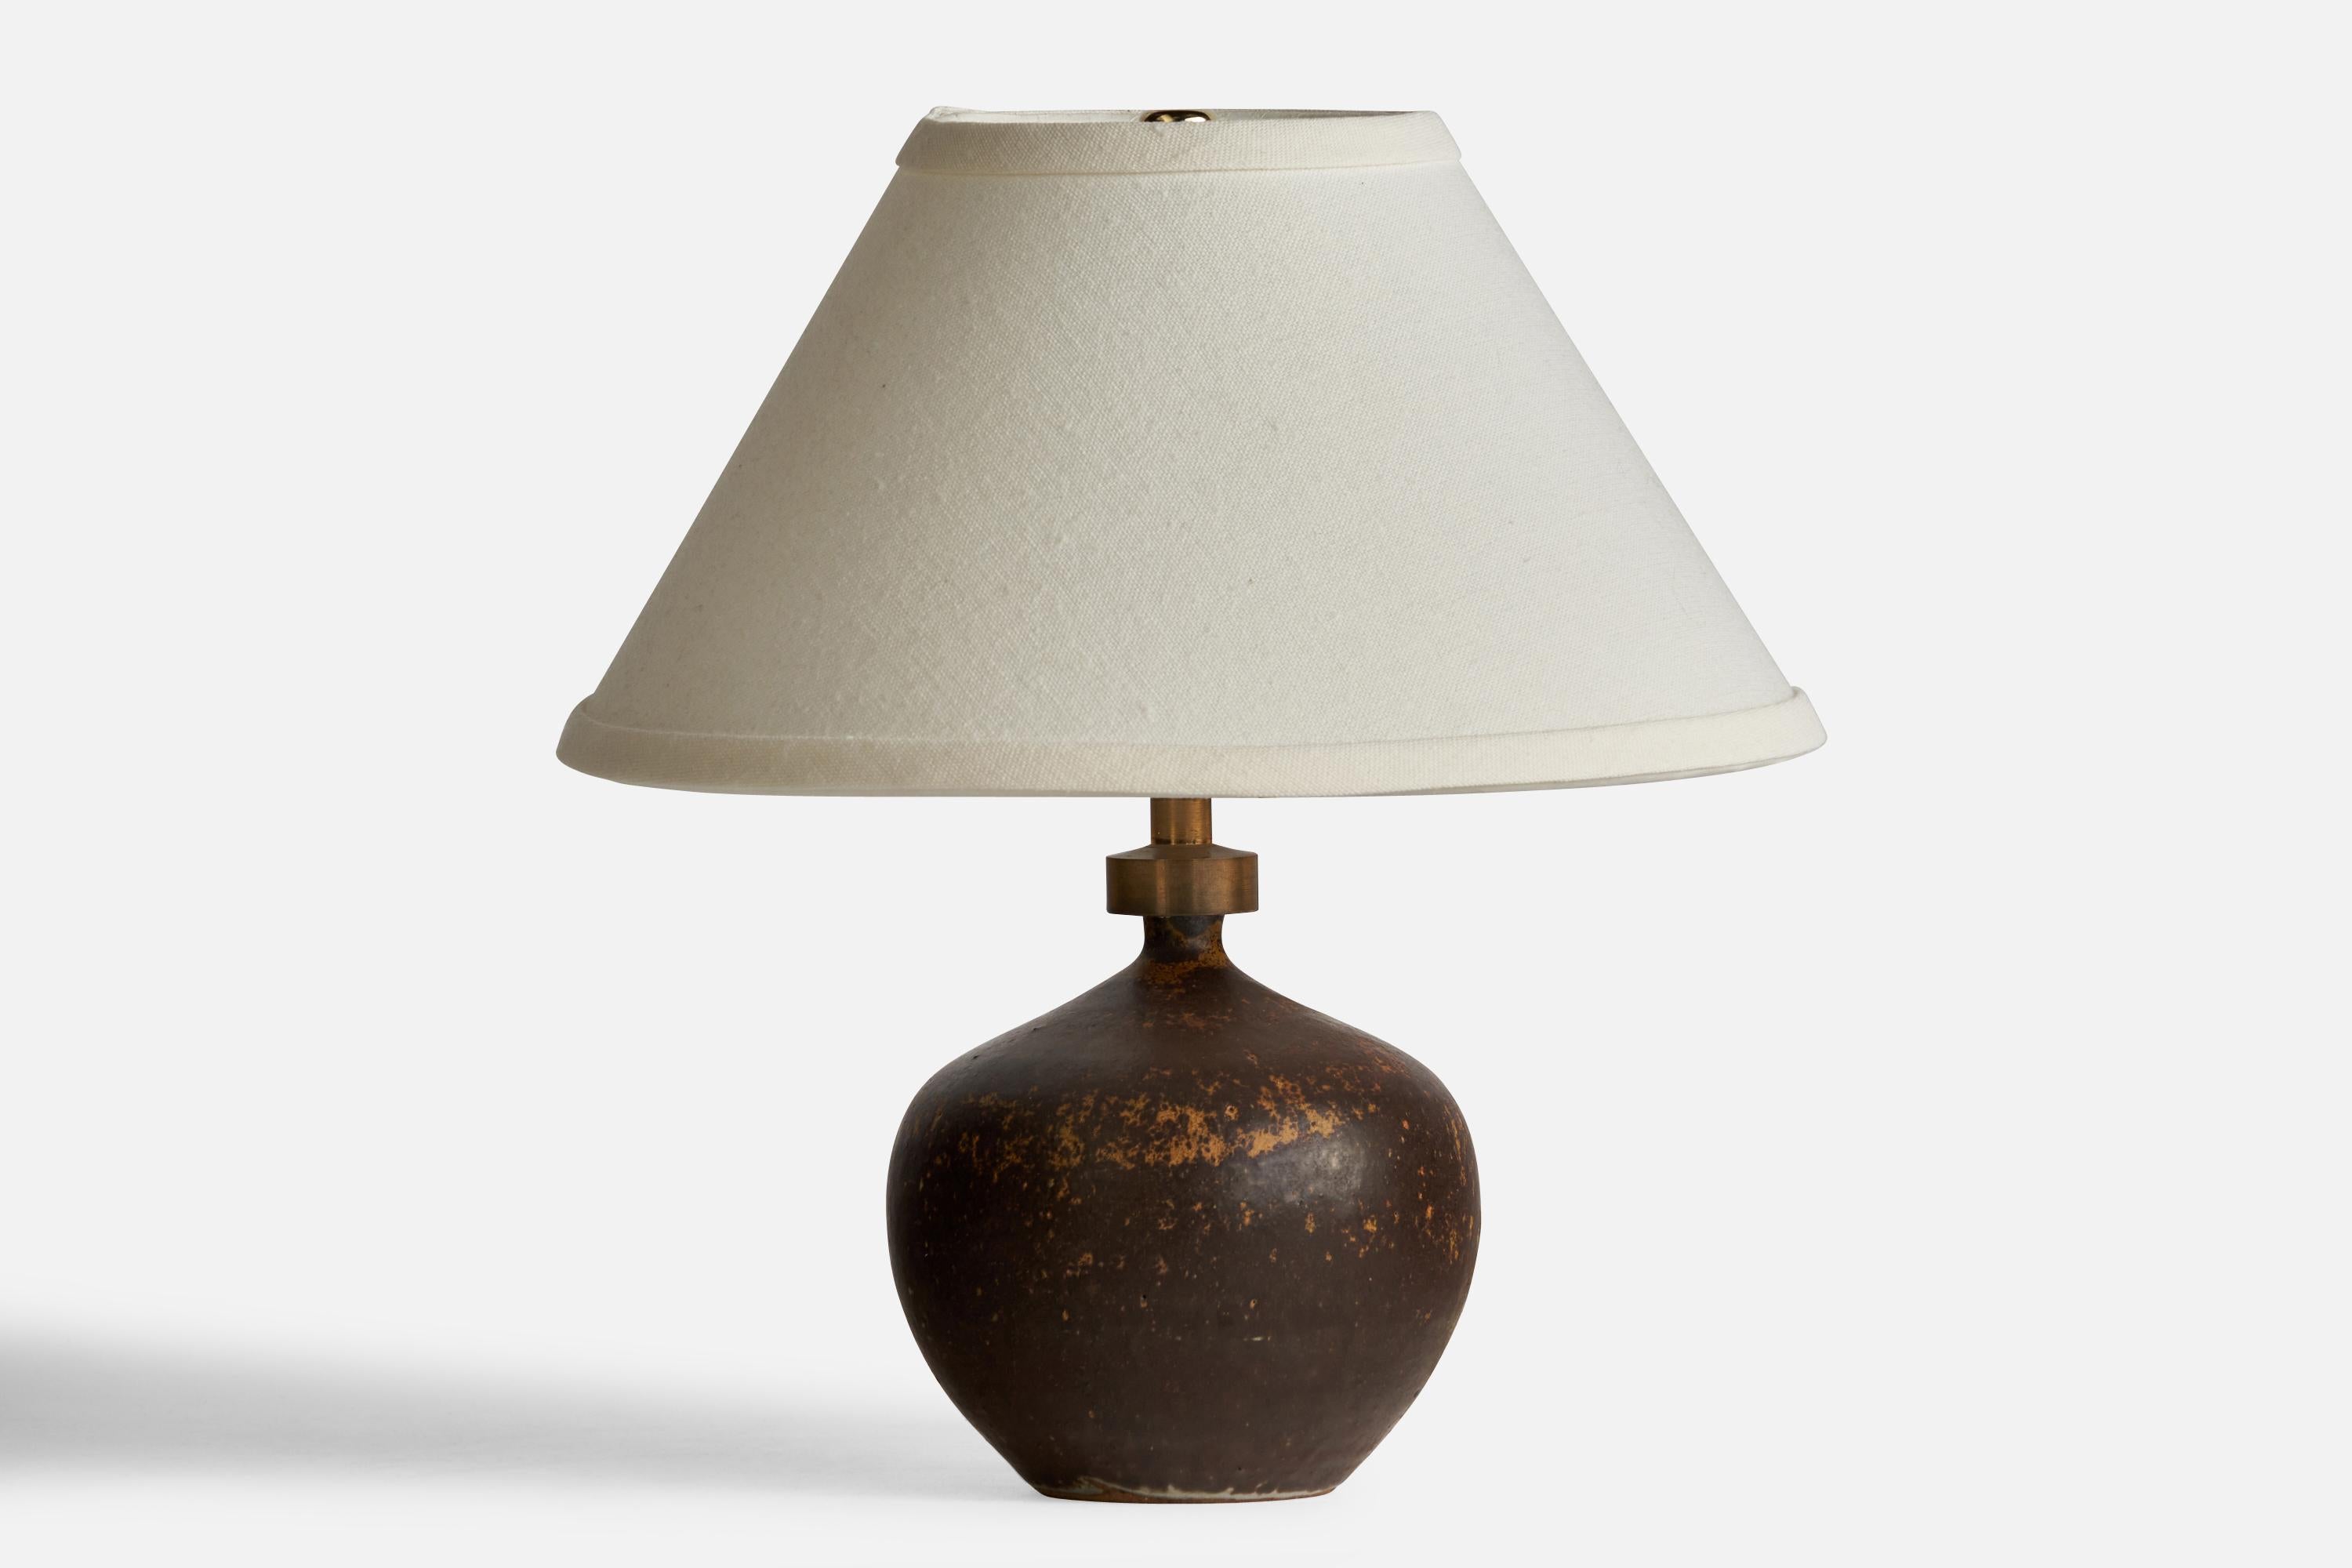 Tischlampe aus braun glasierter Keramik und Messing, entworfen und hergestellt von Ove Rasmussen-Vaedelund, Dänemark, ca. 1960er Jahre.

Abmessungen der Lampe (Zoll): 8